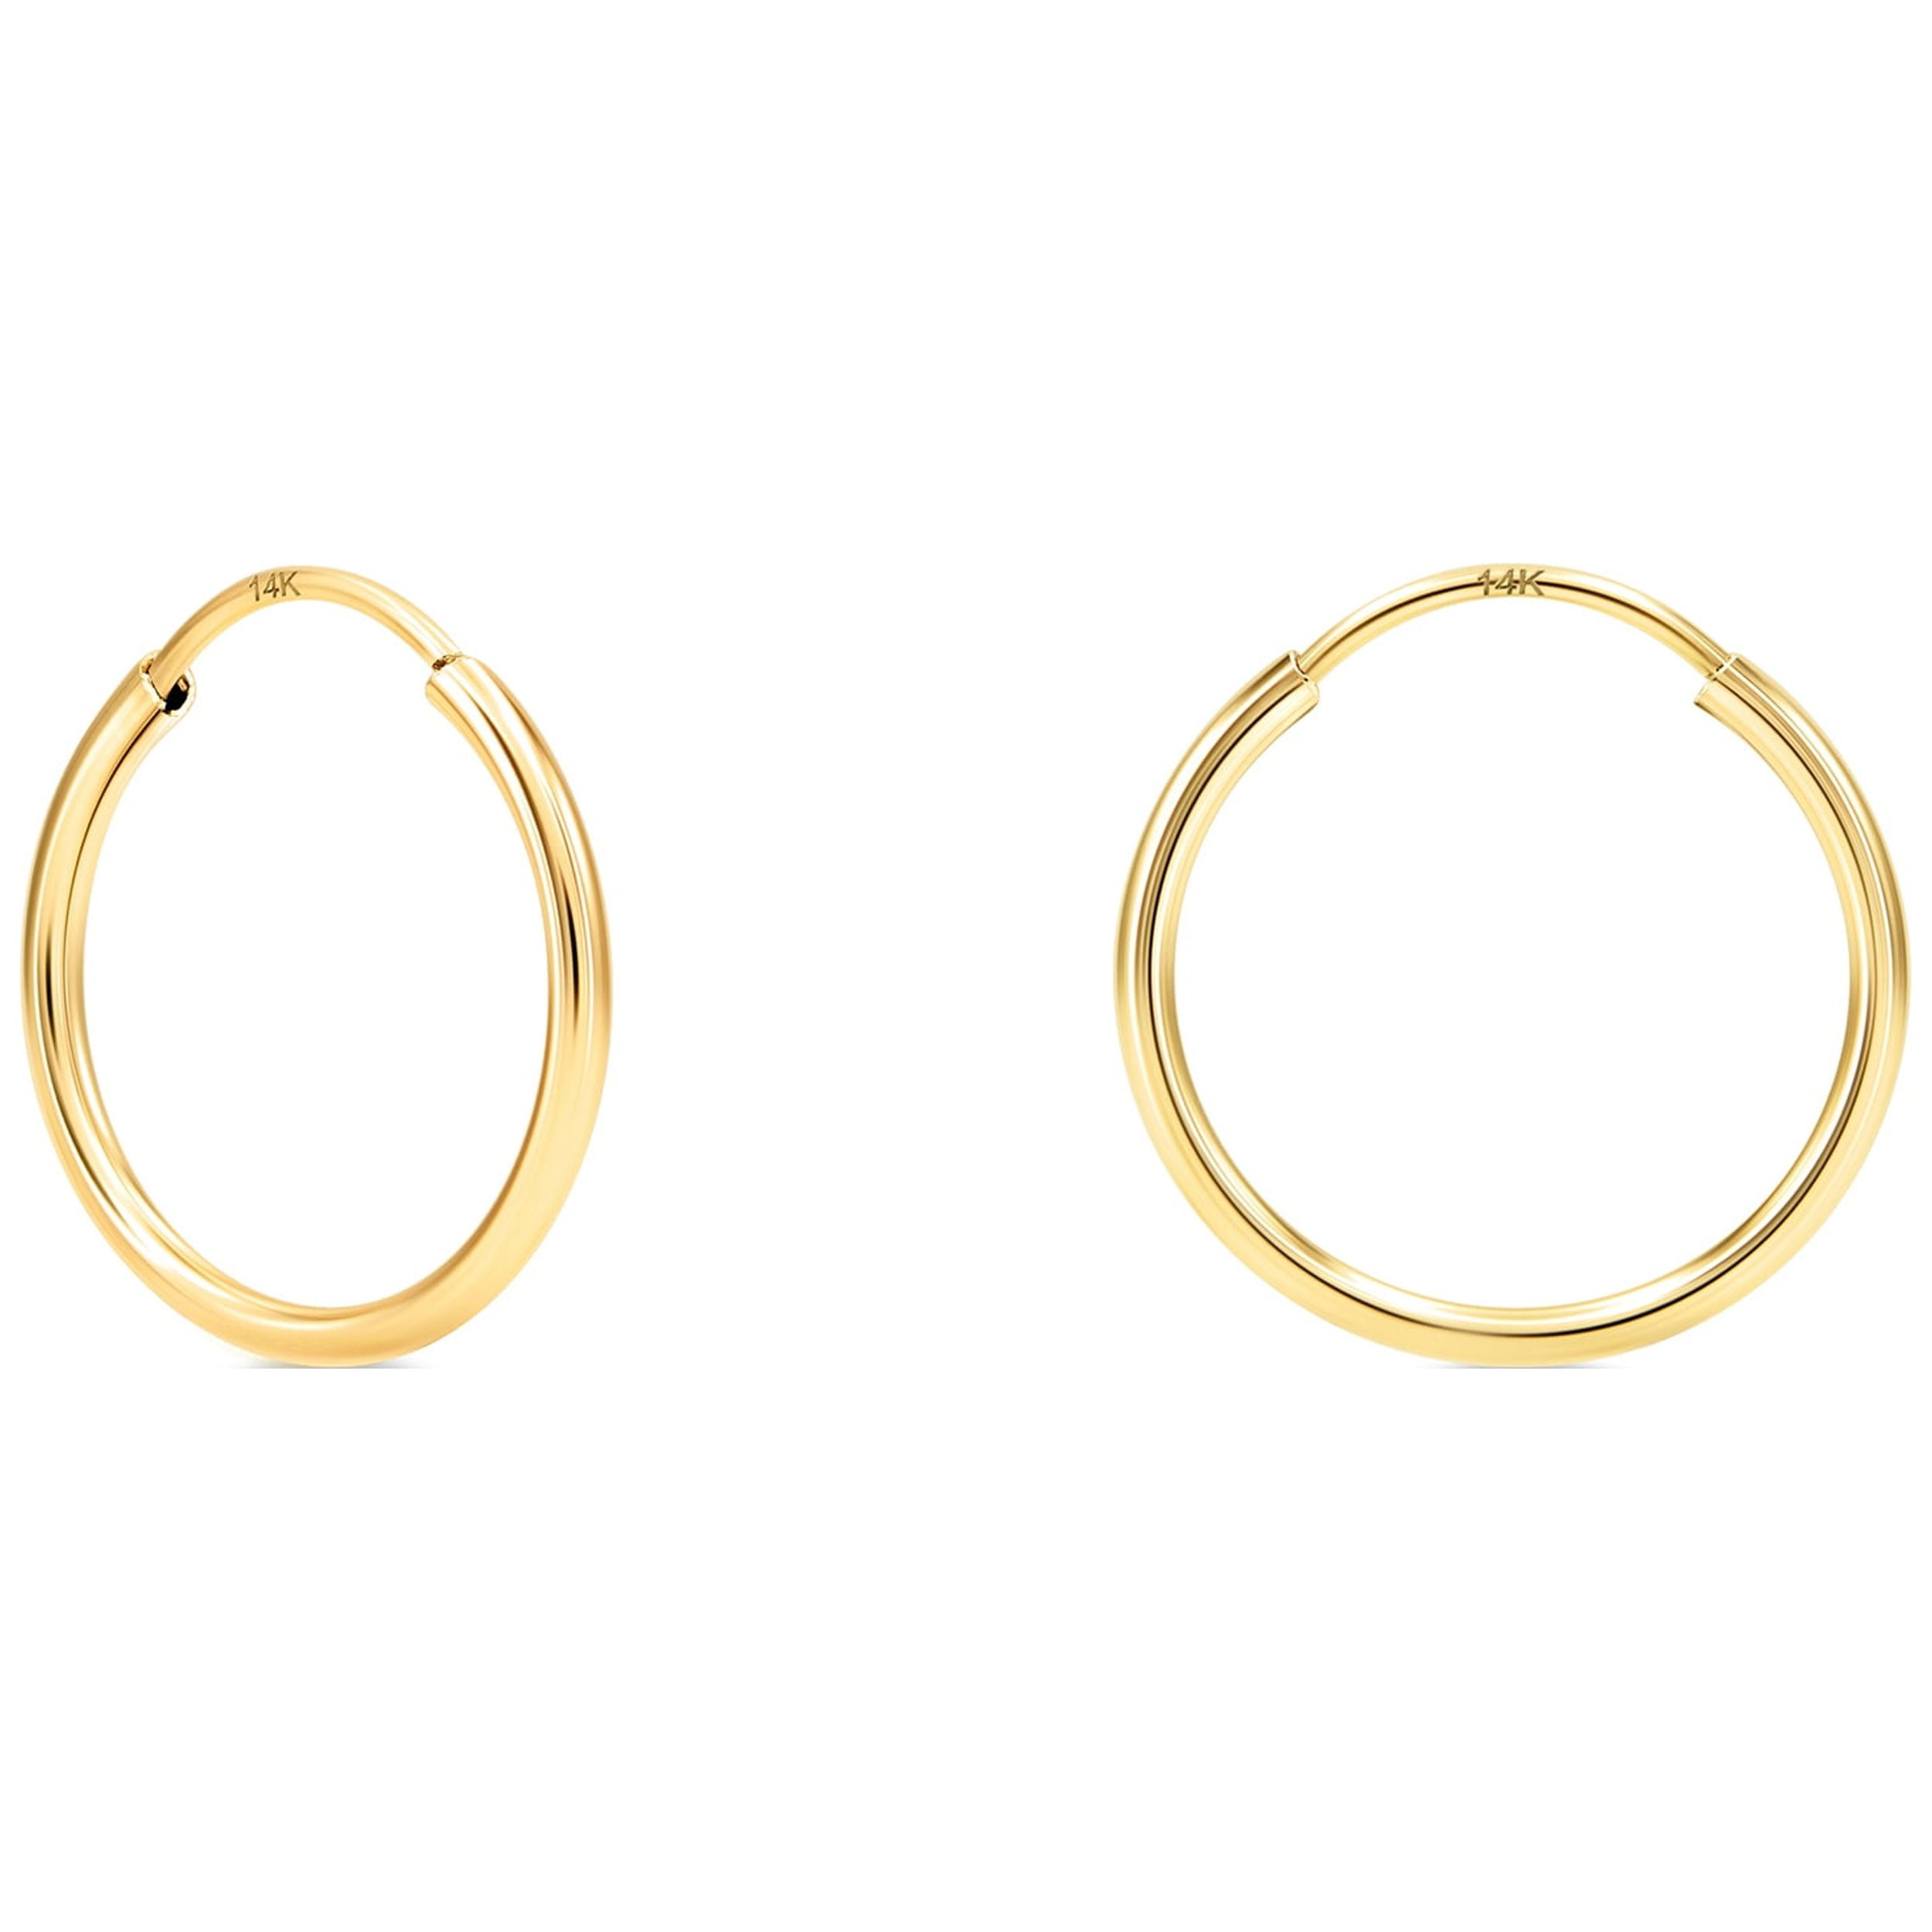 KEZEF Ultra-Thin 14k Yellow Gold Hoop Earrings, Endless Hoops for Women ...